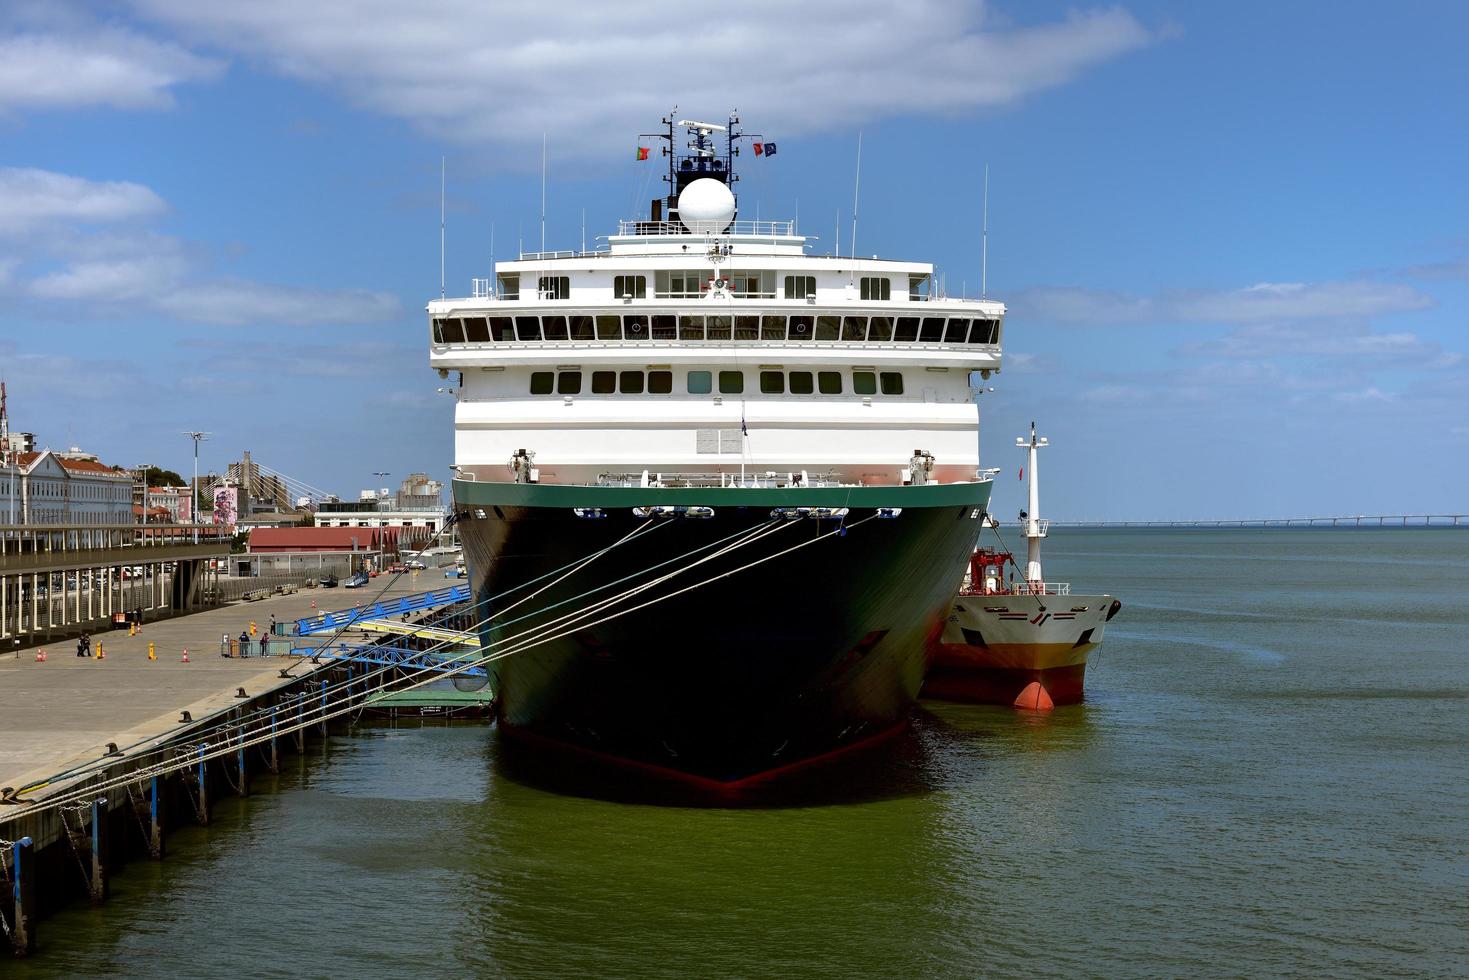 lissabon, portugal - 26 april 2019, zenith cruiseschip in lissabon foto